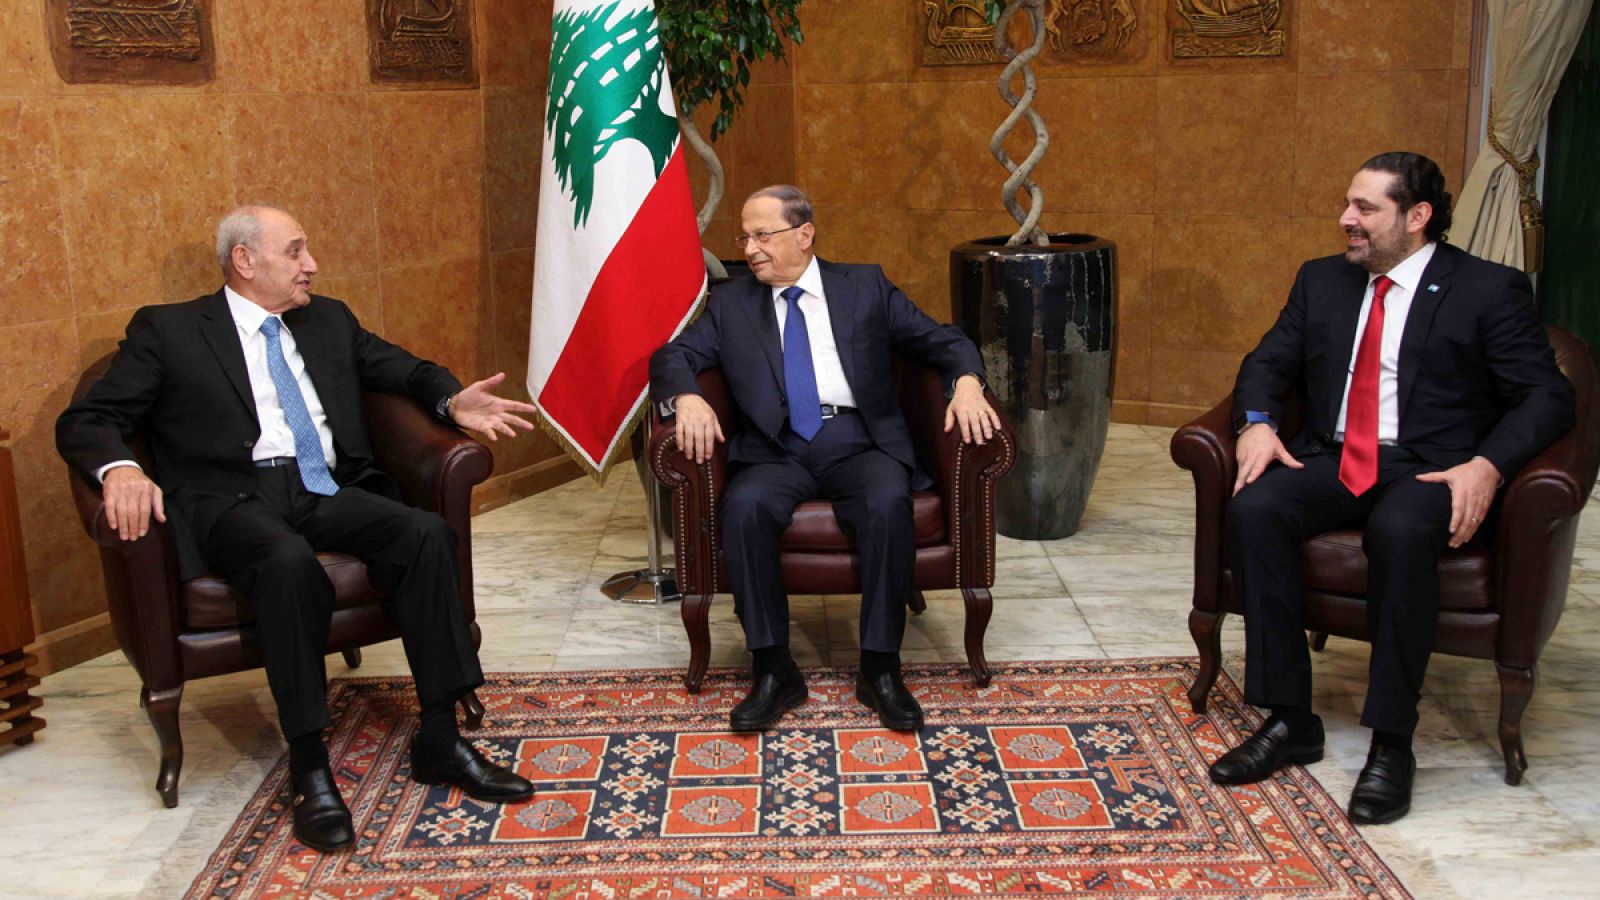 El presidente del Líbano Michael Aoun, junto con el primer ministro Saad al-Hariri y el portavoz parlamentario Nabil Berri en el palacio presidencial de Baabda.